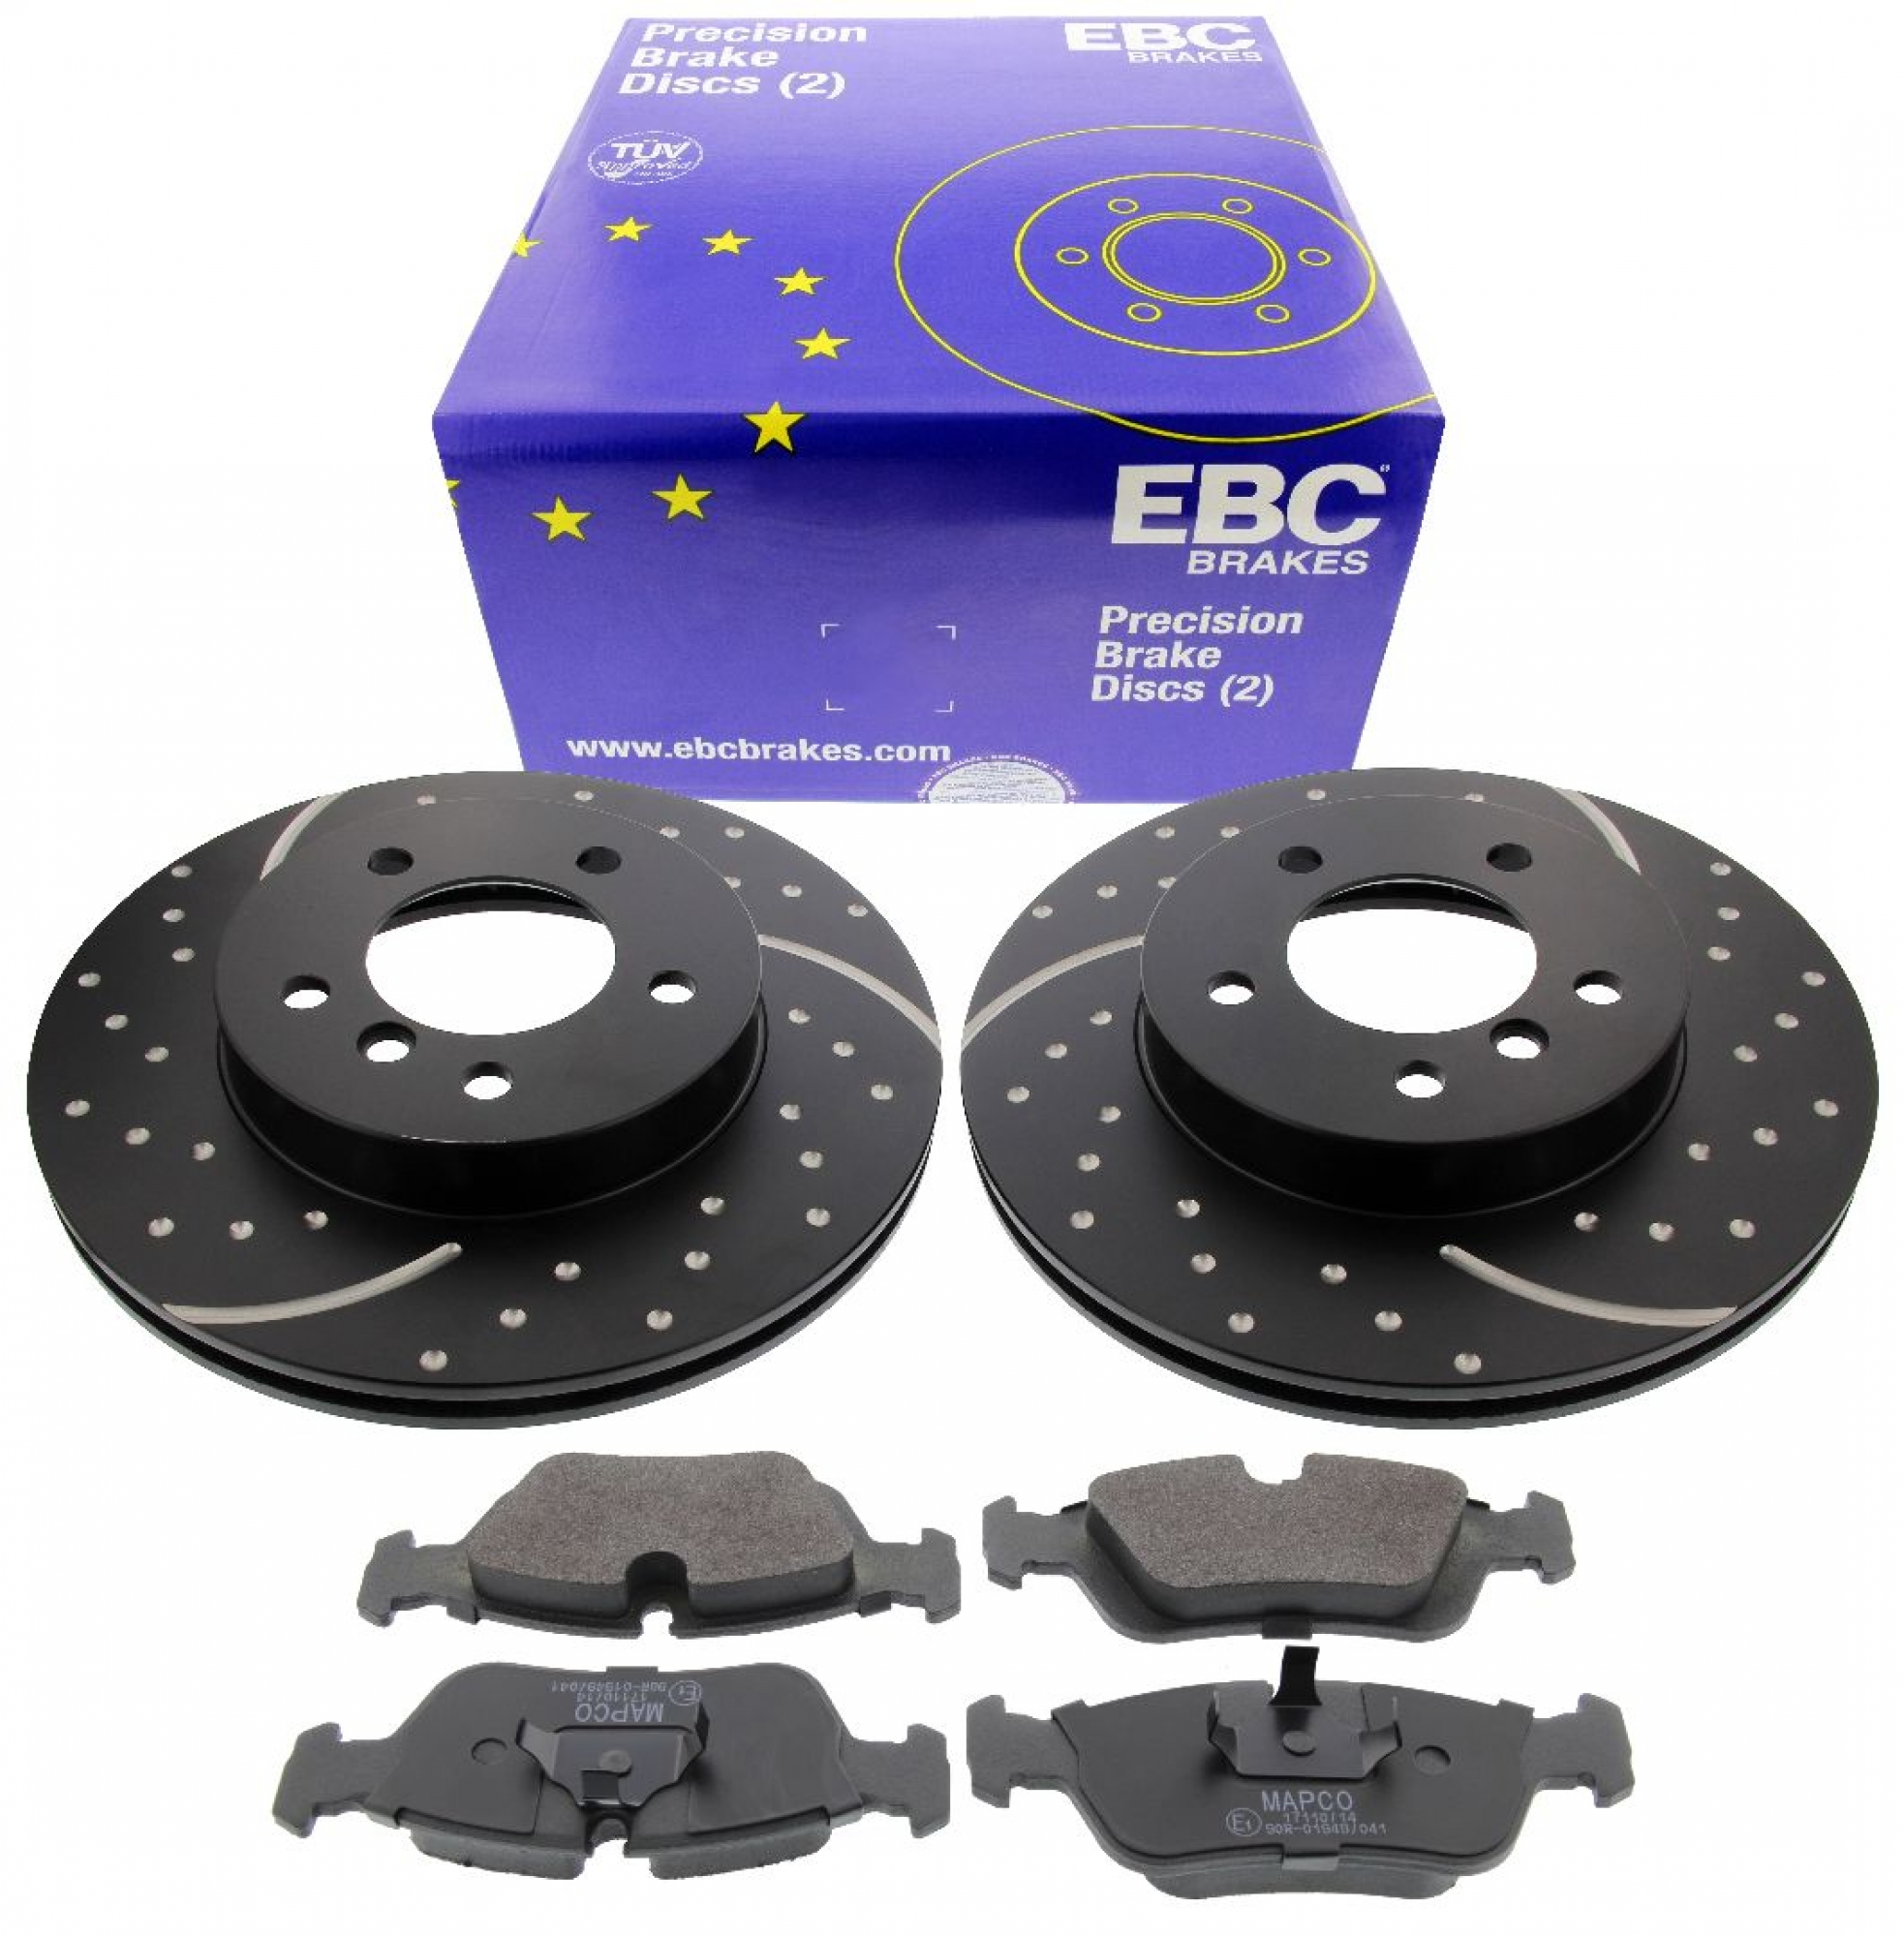 EBC-Bremsensatz, Turbo Groove Disc Black + HPS-Carbon-Bremsbelägen von MAPCO, Achssatz, VA, BMW Z3, Z4, 3